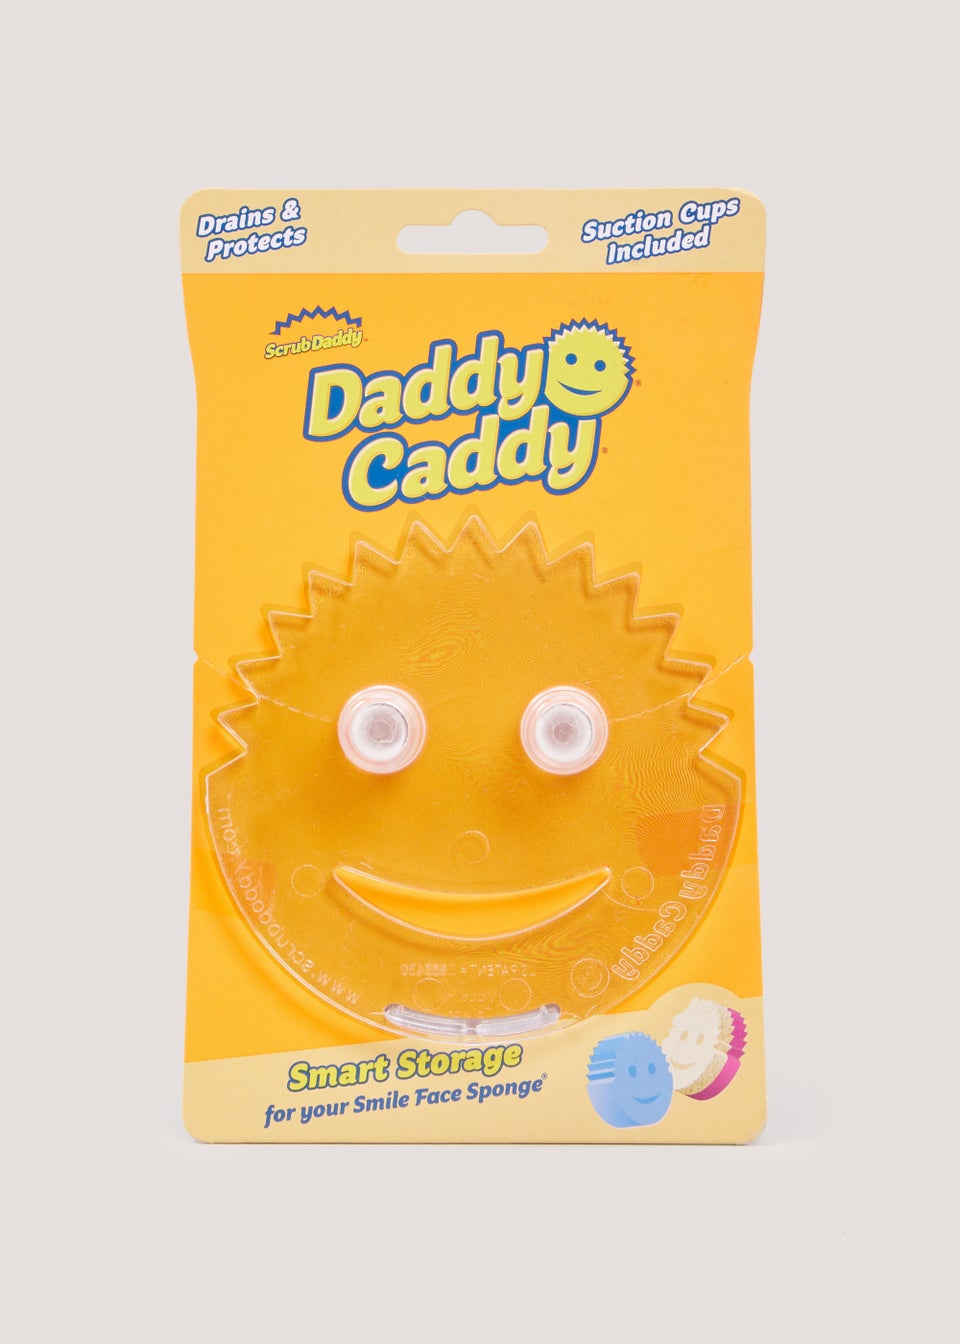 Scrub Daddy Daddy Caddy